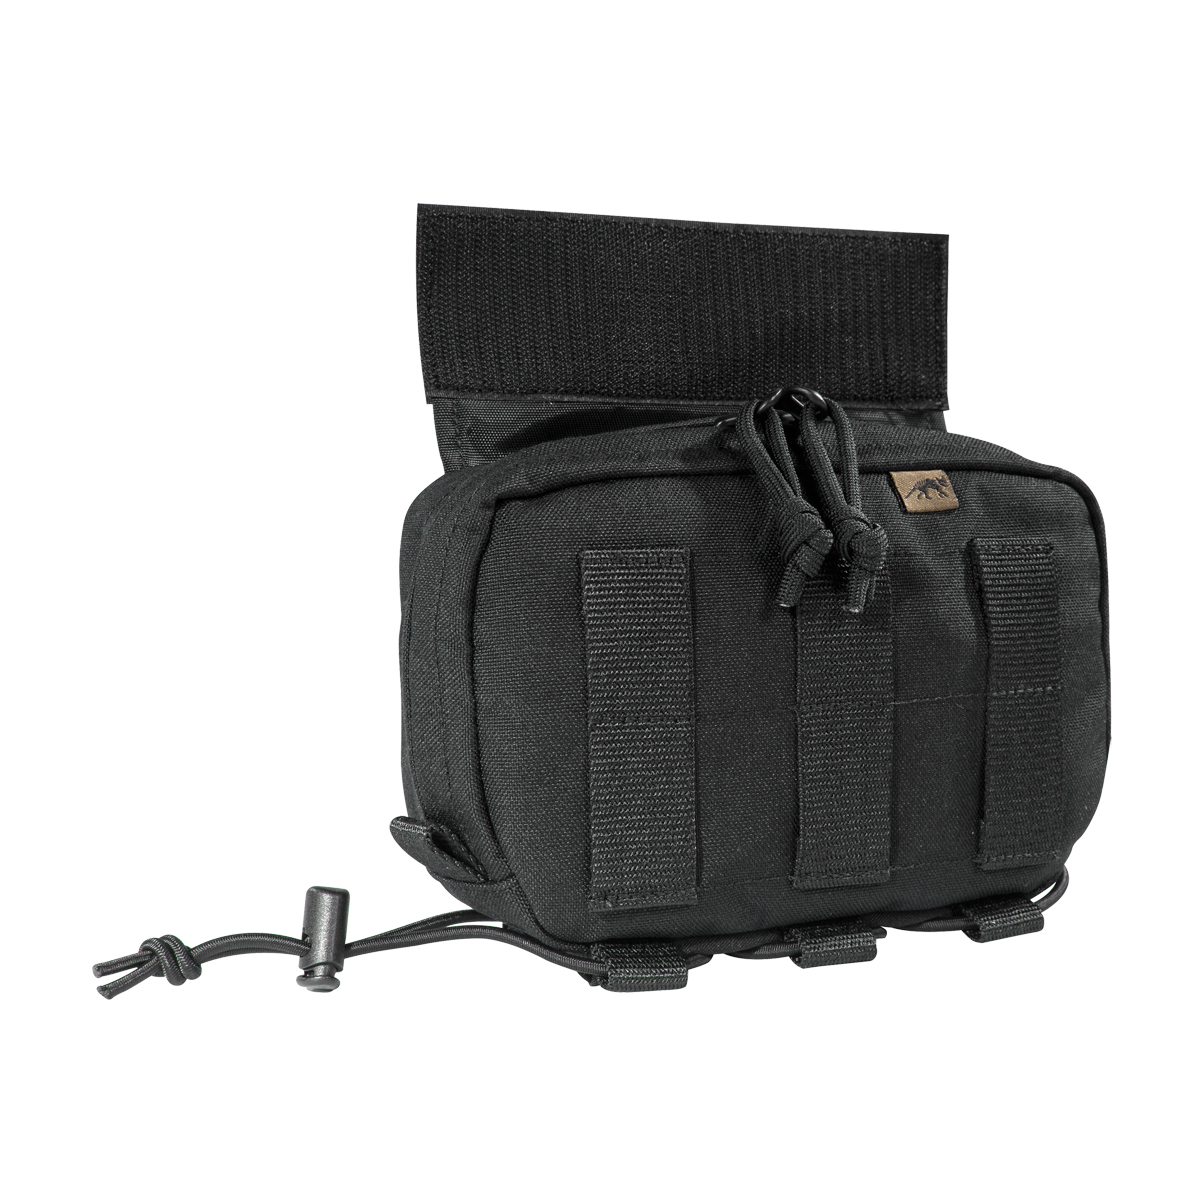 Produktbild von Tasmanian Tiger TT Tac Pouch 12, schwarz - Zusatz-Fronttasche für Plate Carrier LC-Frontpanels (17 x 11,5 x 5 cm)